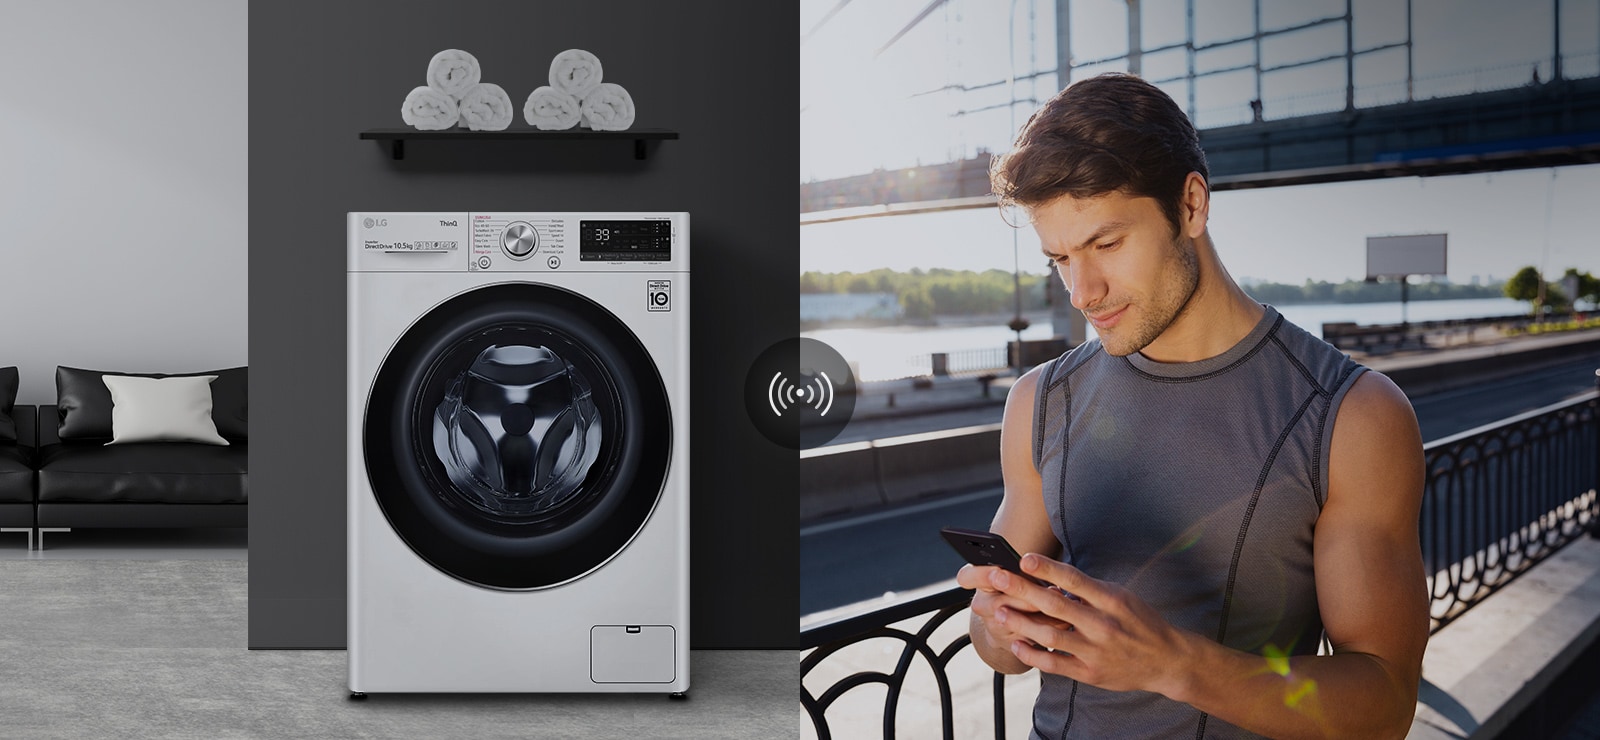 Một người đàn ông bên ngoài nhà đang kiểm tra tình trạng của máy giặt ở nhà thông qua ứng dụng điện thoại di động.